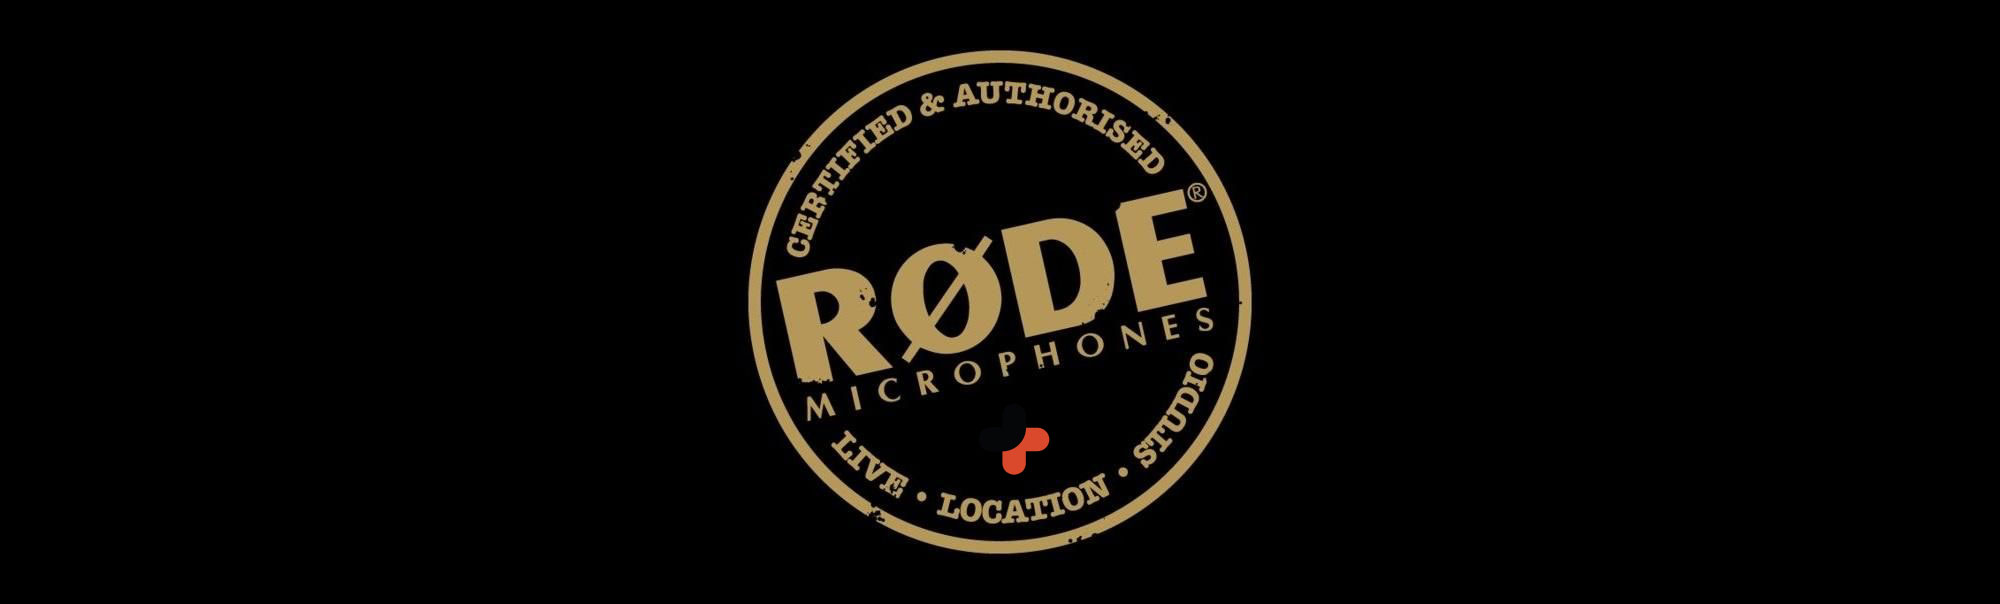 میکروفون استودیویی Rode | میکروفون Rode NT2A | صوت پلاس